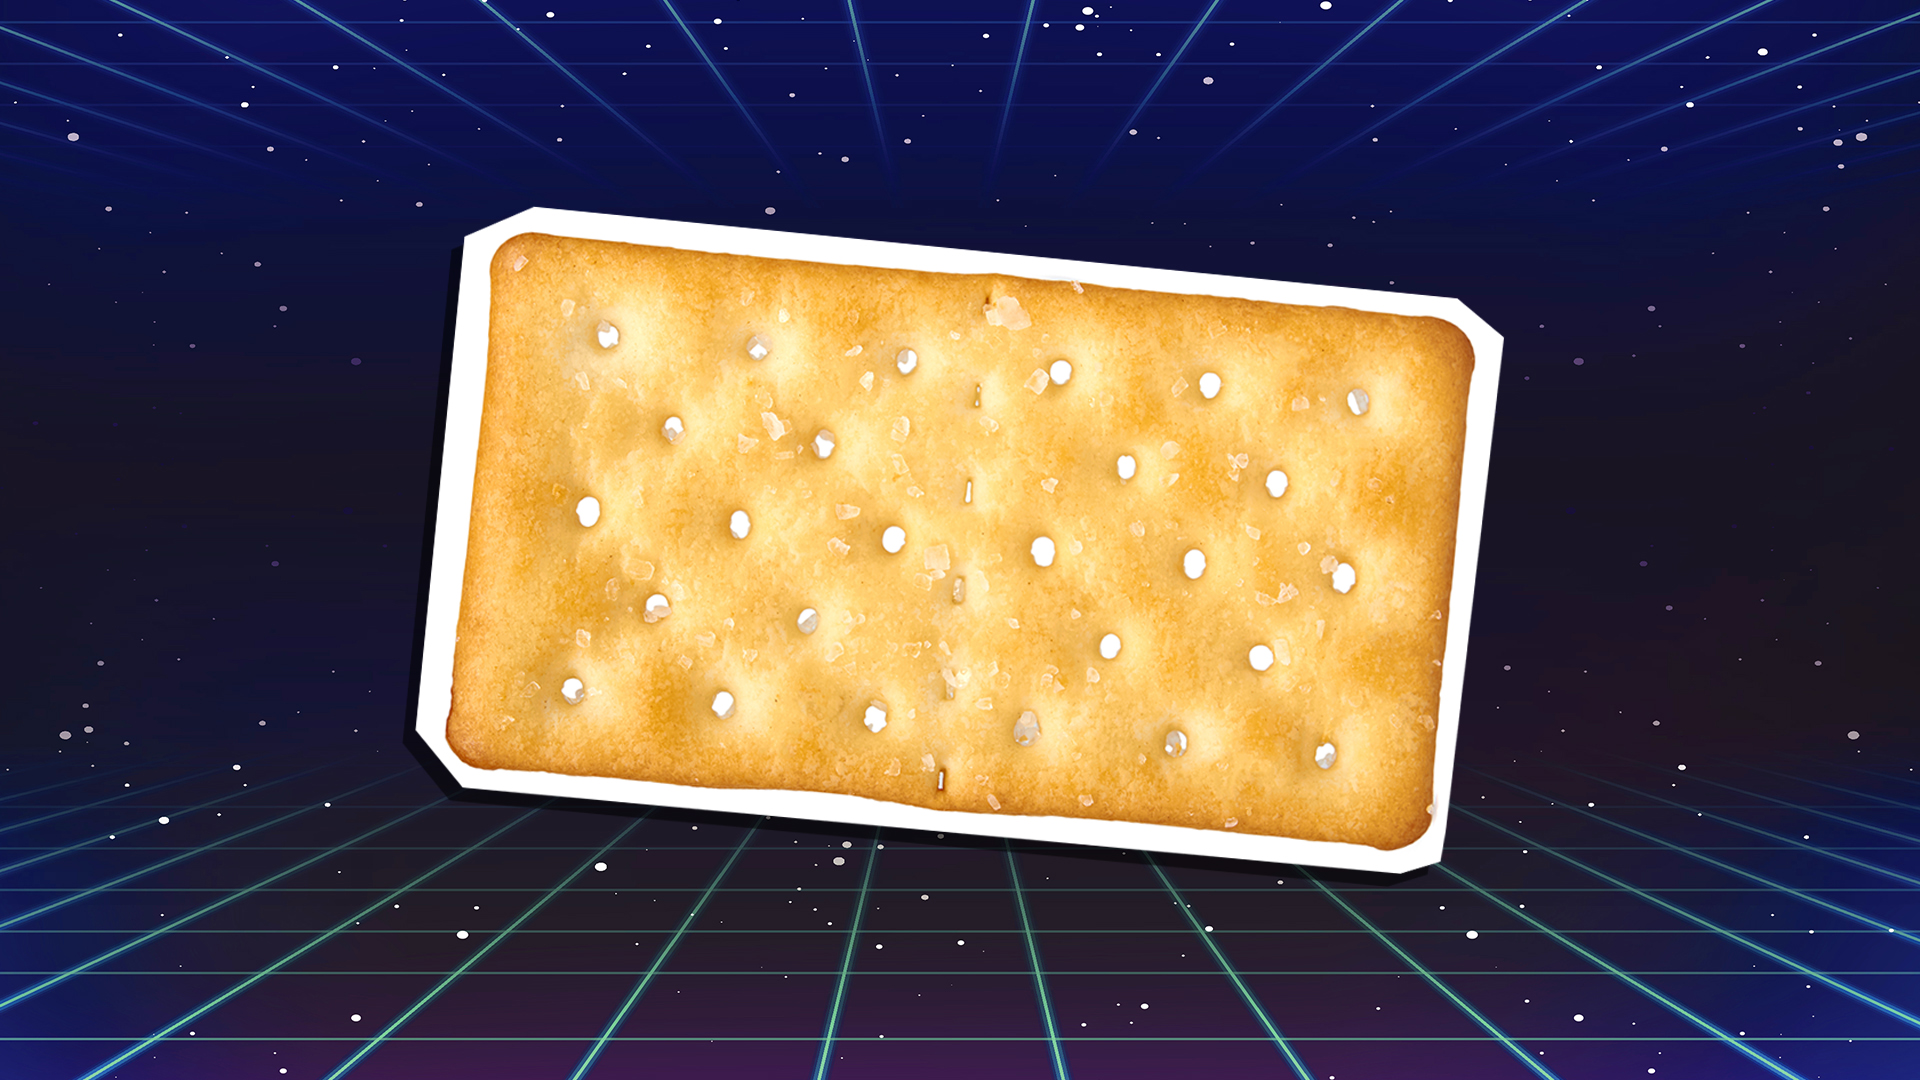 A salted cracker